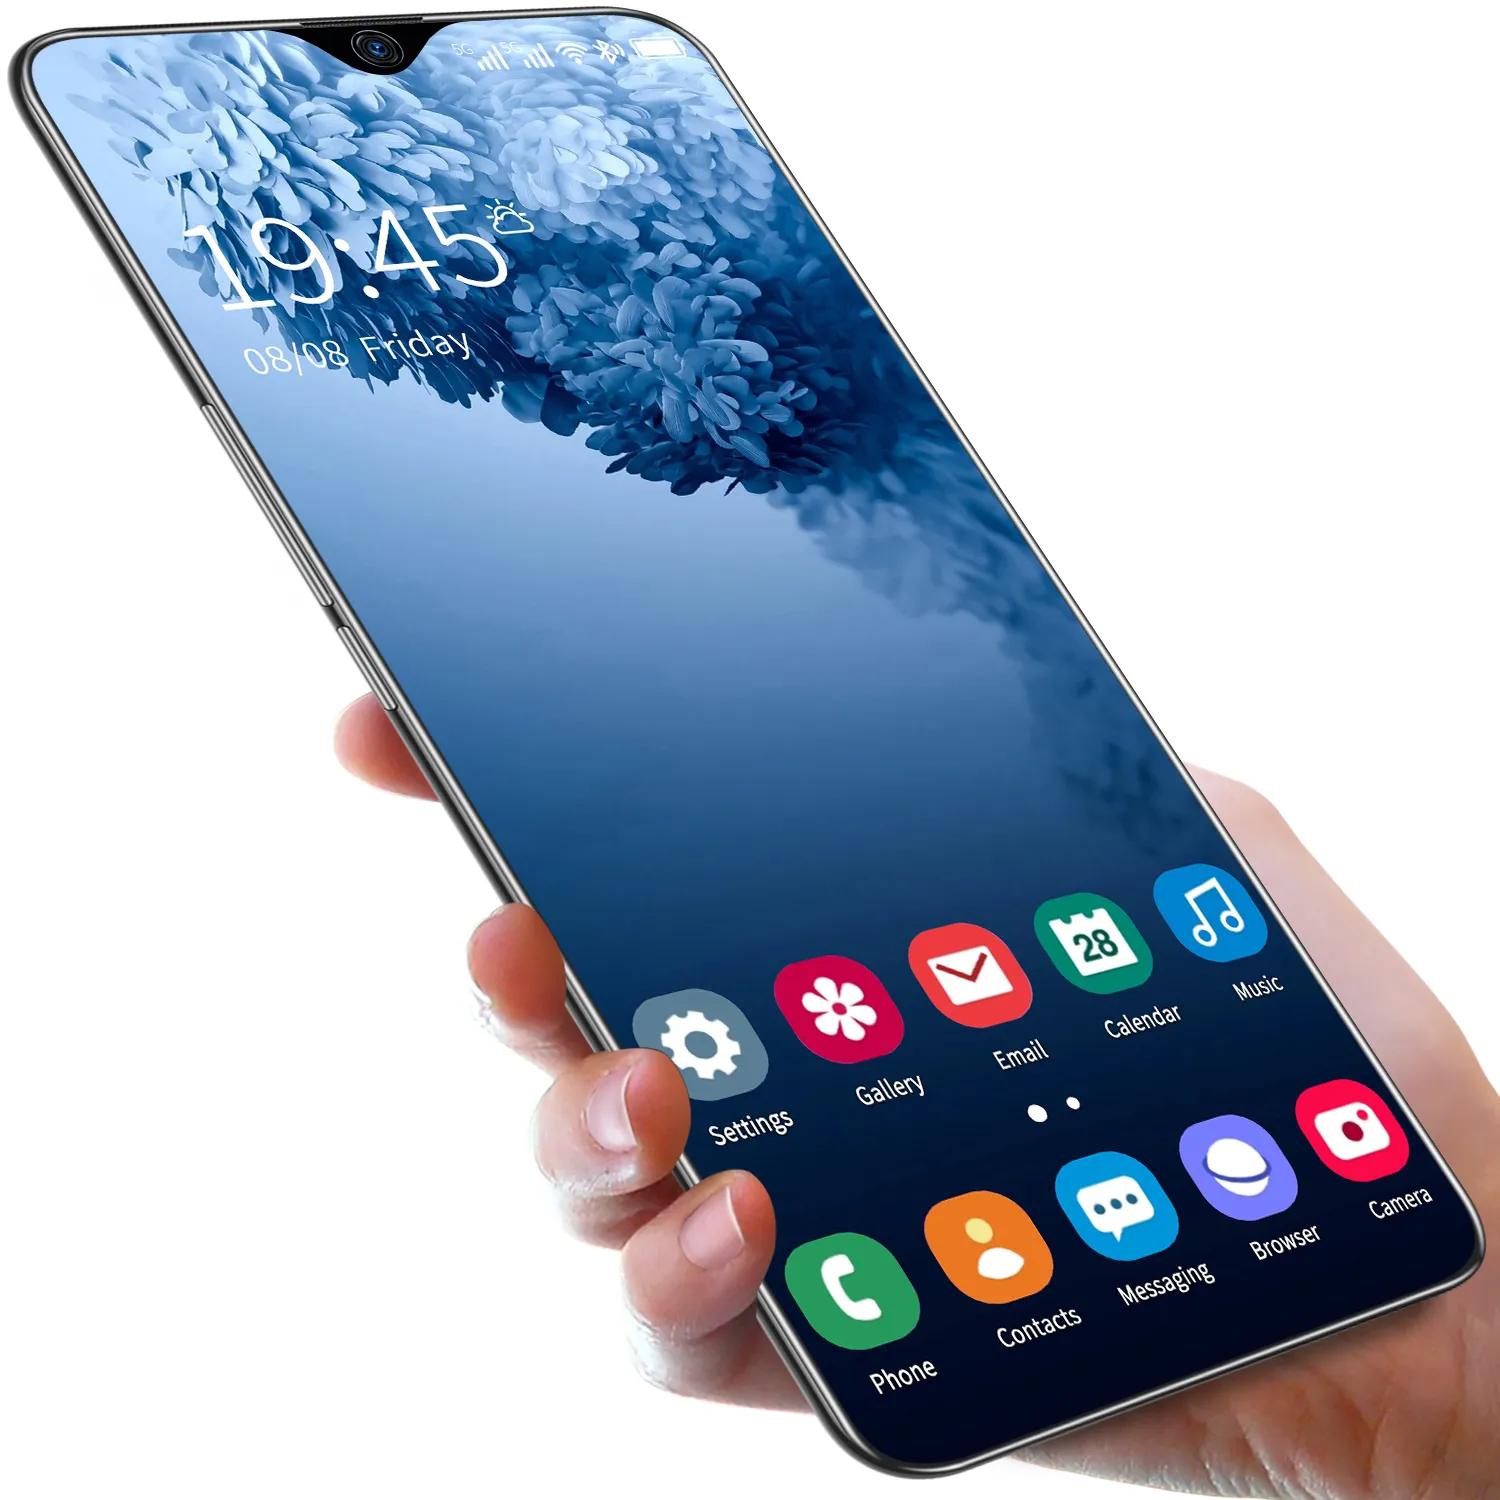 Note30 Ultra 7 5 pulgadas Pixel de alta definición Pantalla grande Android Todo en uno Videojuego Red inalámbrica Teléfono móvil de bajo costo